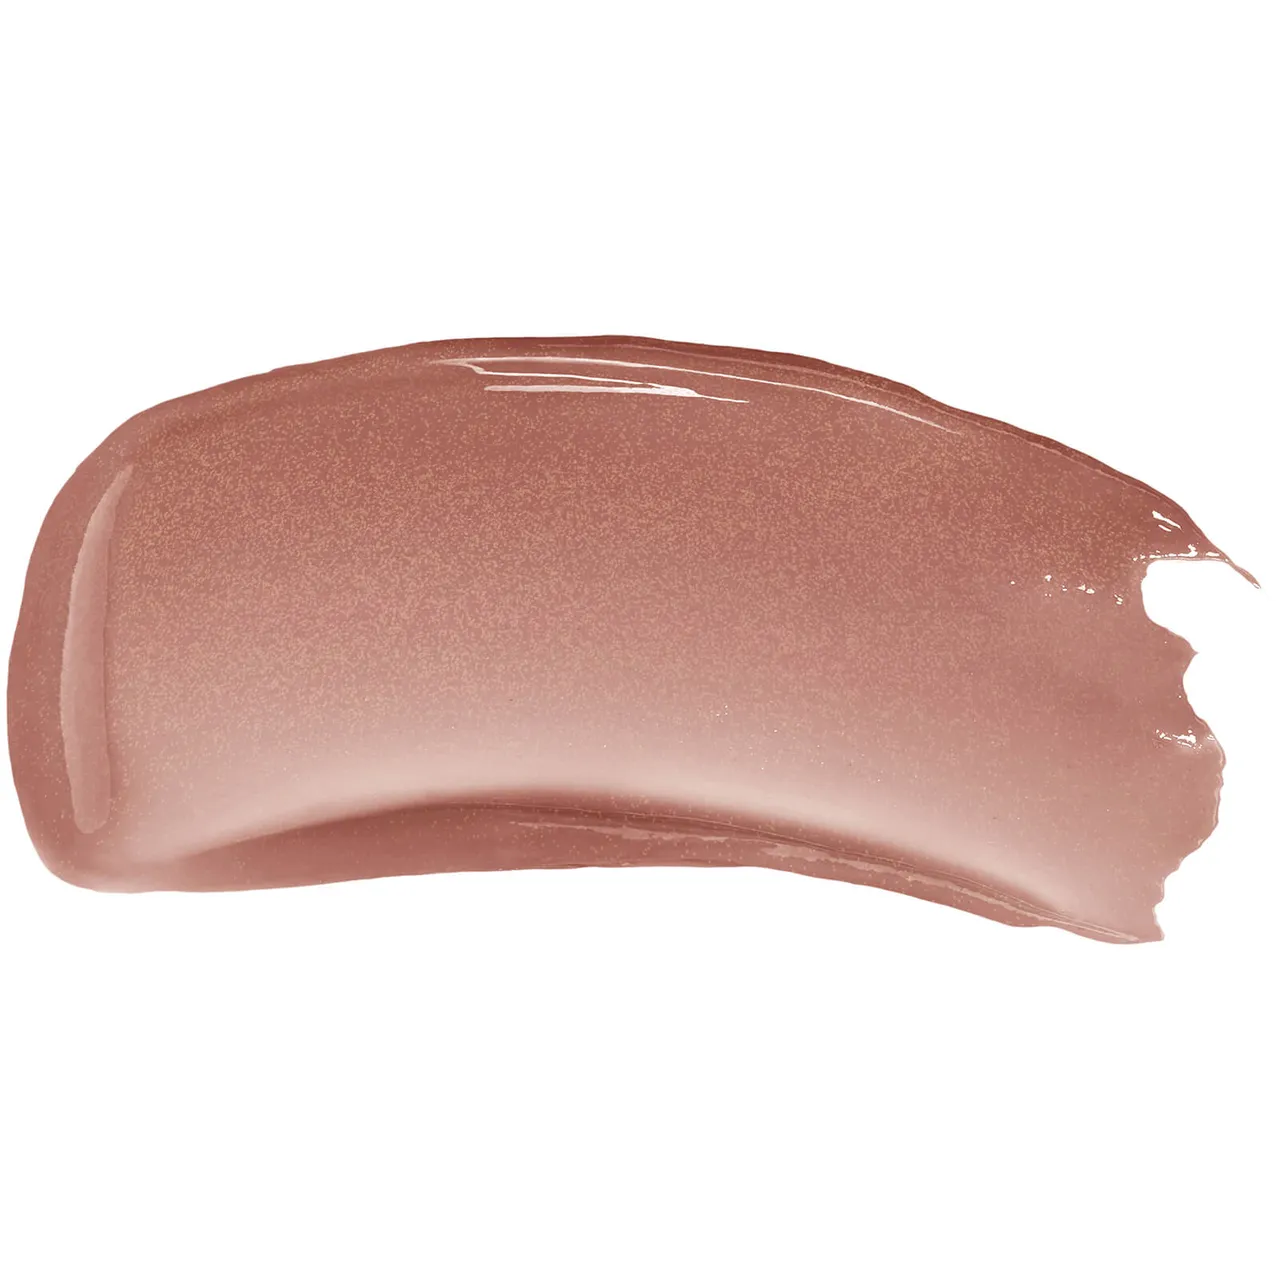 Givenchy Rose Perfecto Liquid Lip Balm 6ml (Various Shades) - N110